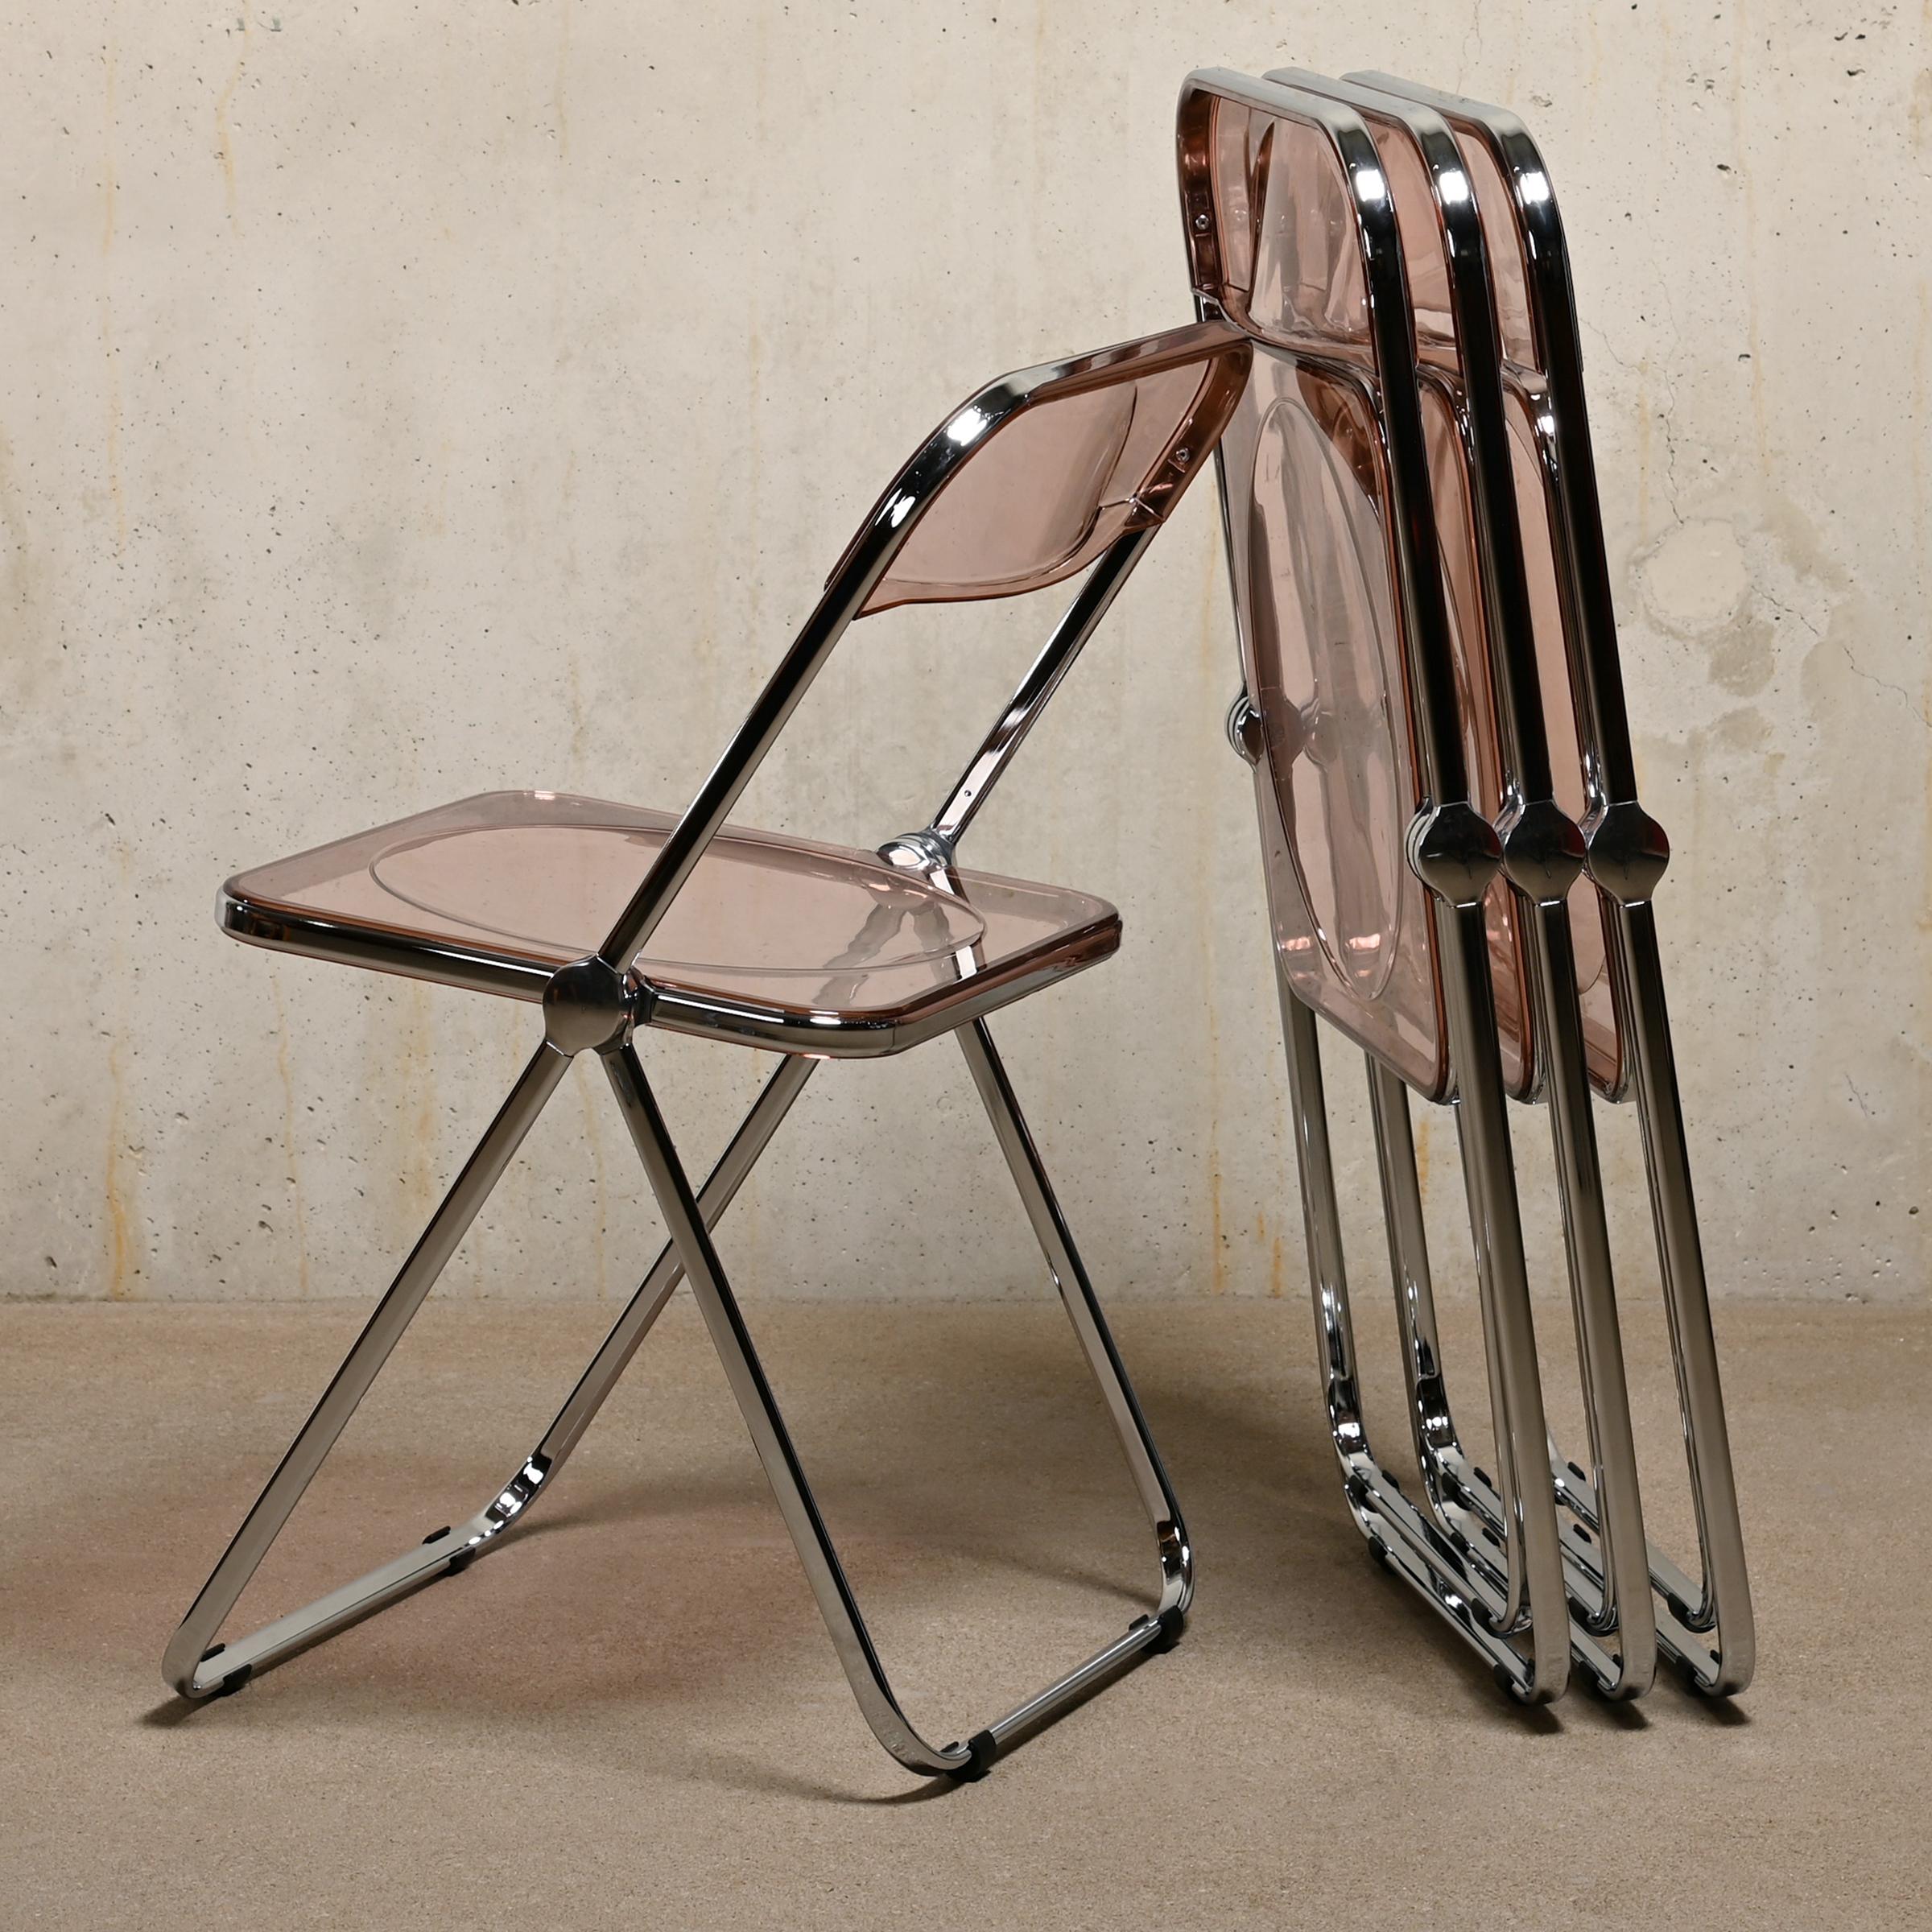 La chaise pliante Plia est un design inventif et magnifique de Giancarlo Piretti pour Castelli en 1967, en Italie. Cette icône figure dans toutes les publications standard sur le design (mobilier) du XXe siècle. Son mécanisme de pliage simple permet